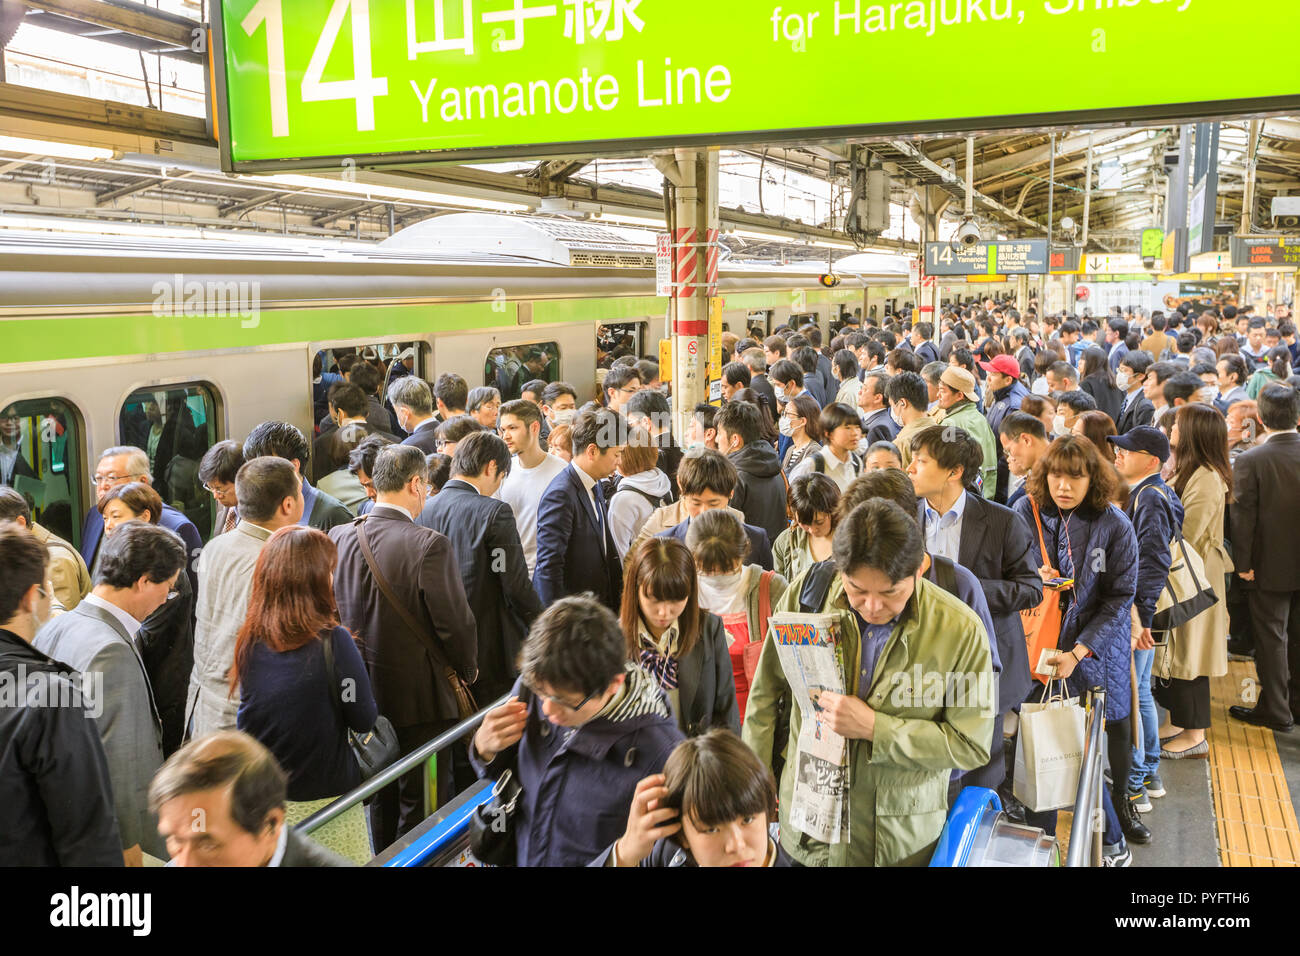 Tokyo, Giappone - 17 Aprile 2017: linea verde di Yamanote per Harajuku, la più importante linea ferroviaria in Tokyo. La Folla di pendolari in attesa del convoglio ferroviario alla stazione di Shinjuku a Tokyo. Foto Stock